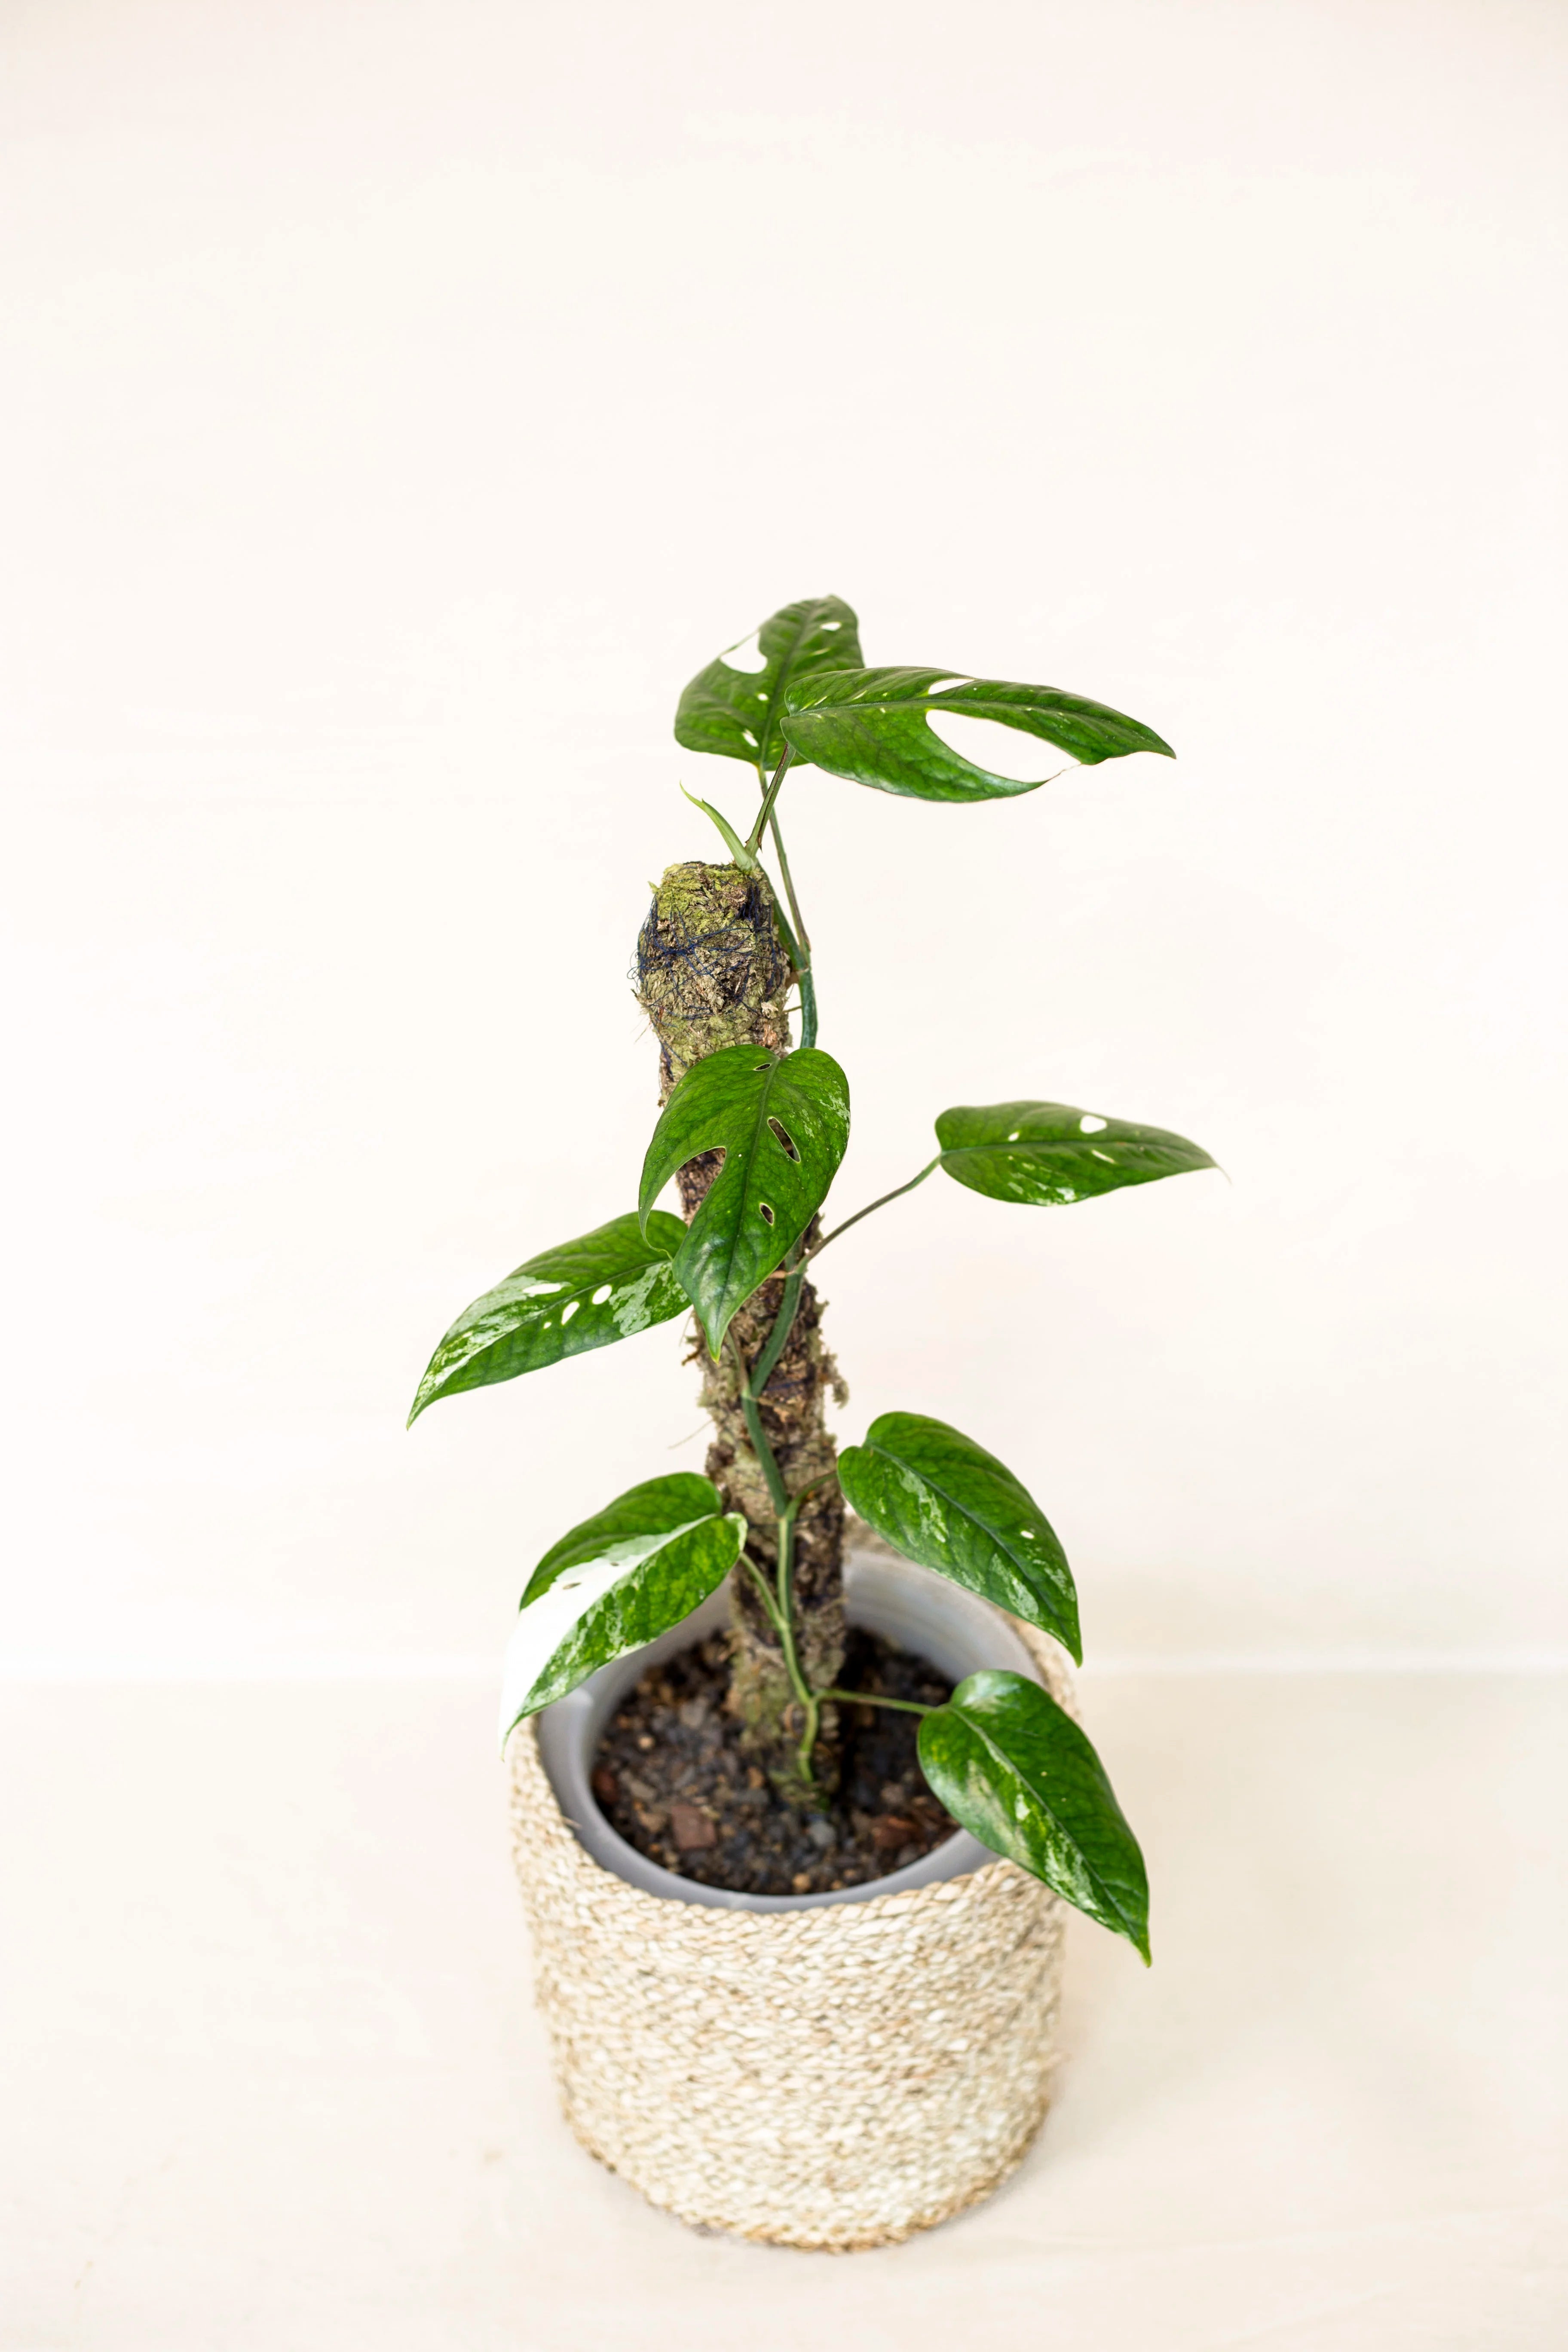 Epipremnum pinnatum sp. Sulawesi variegata